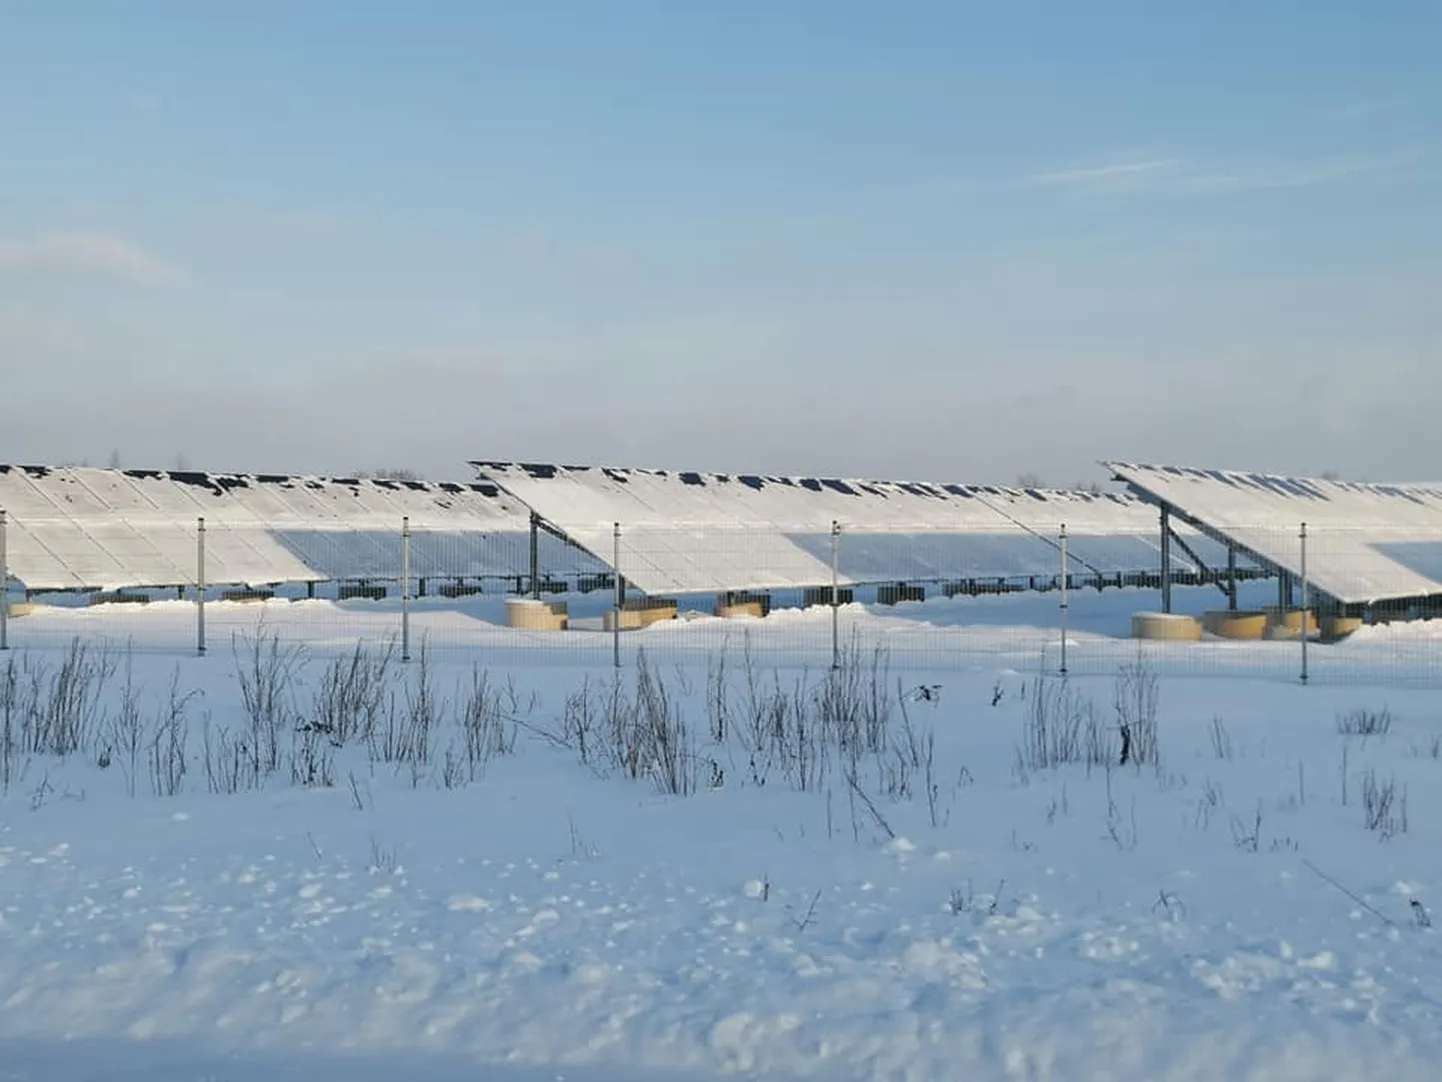 Солнечные панели в зимних условиях справляются со своей задачей заметно хуже. В данном случае нужно добавить, что эта ферма еще не подключена к сети, поэтому снег не убирали.